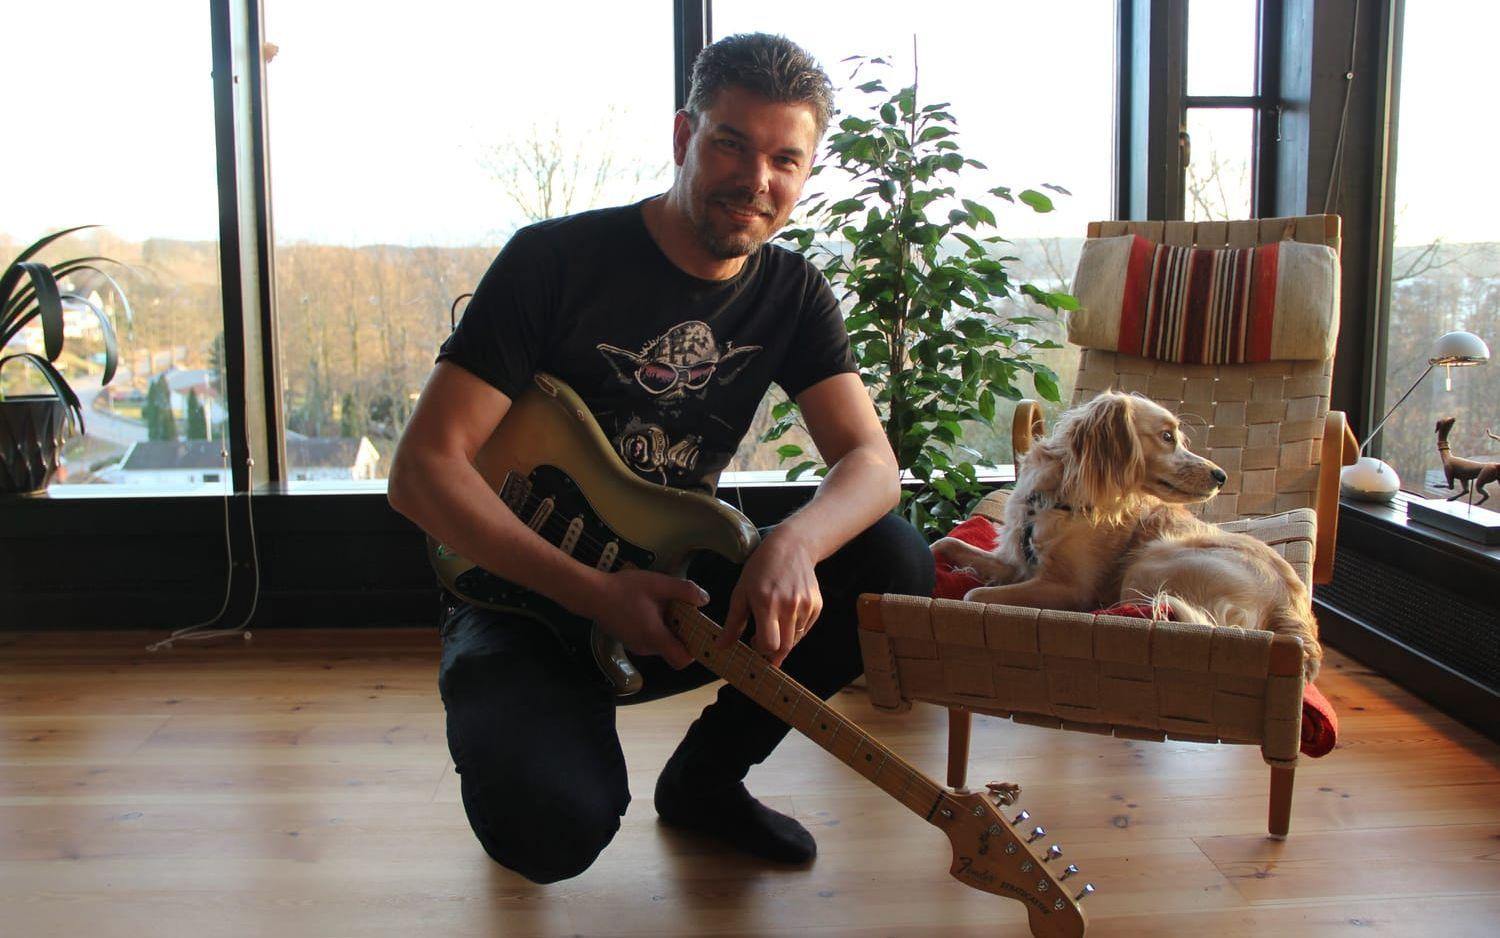 Idén till "The traveling guitar" hämtade Mattias Klasson från geocaching. Hunden Charlie verkar dock föga imponerad. Bild: Martin Björklund